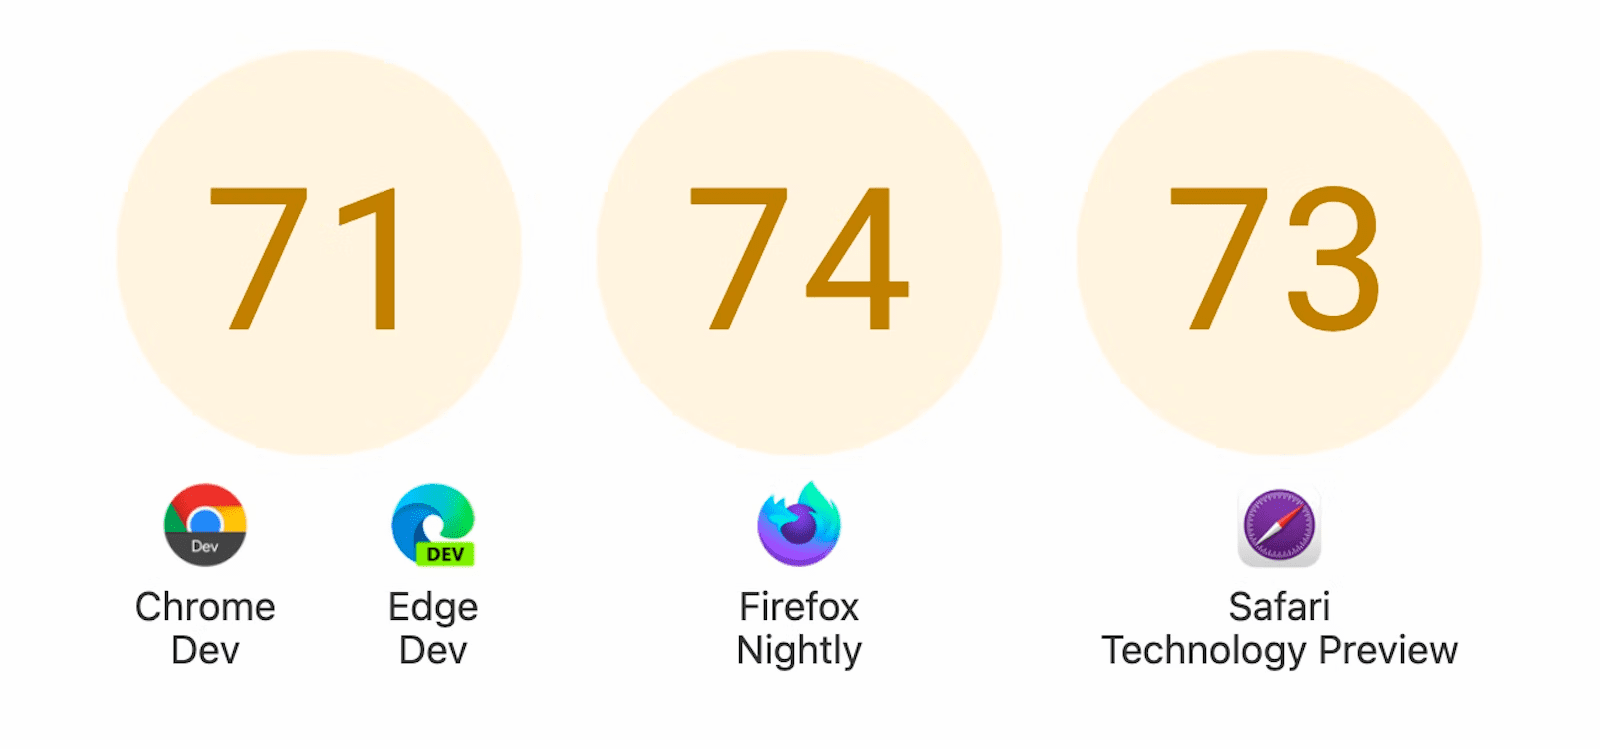 점수가 있는 3개의 원 표시: Chrome Dev 및 Edge Dev의 경우 71, Firefox Nightly의 경우 74, Safari Technology Preview의 경우 73